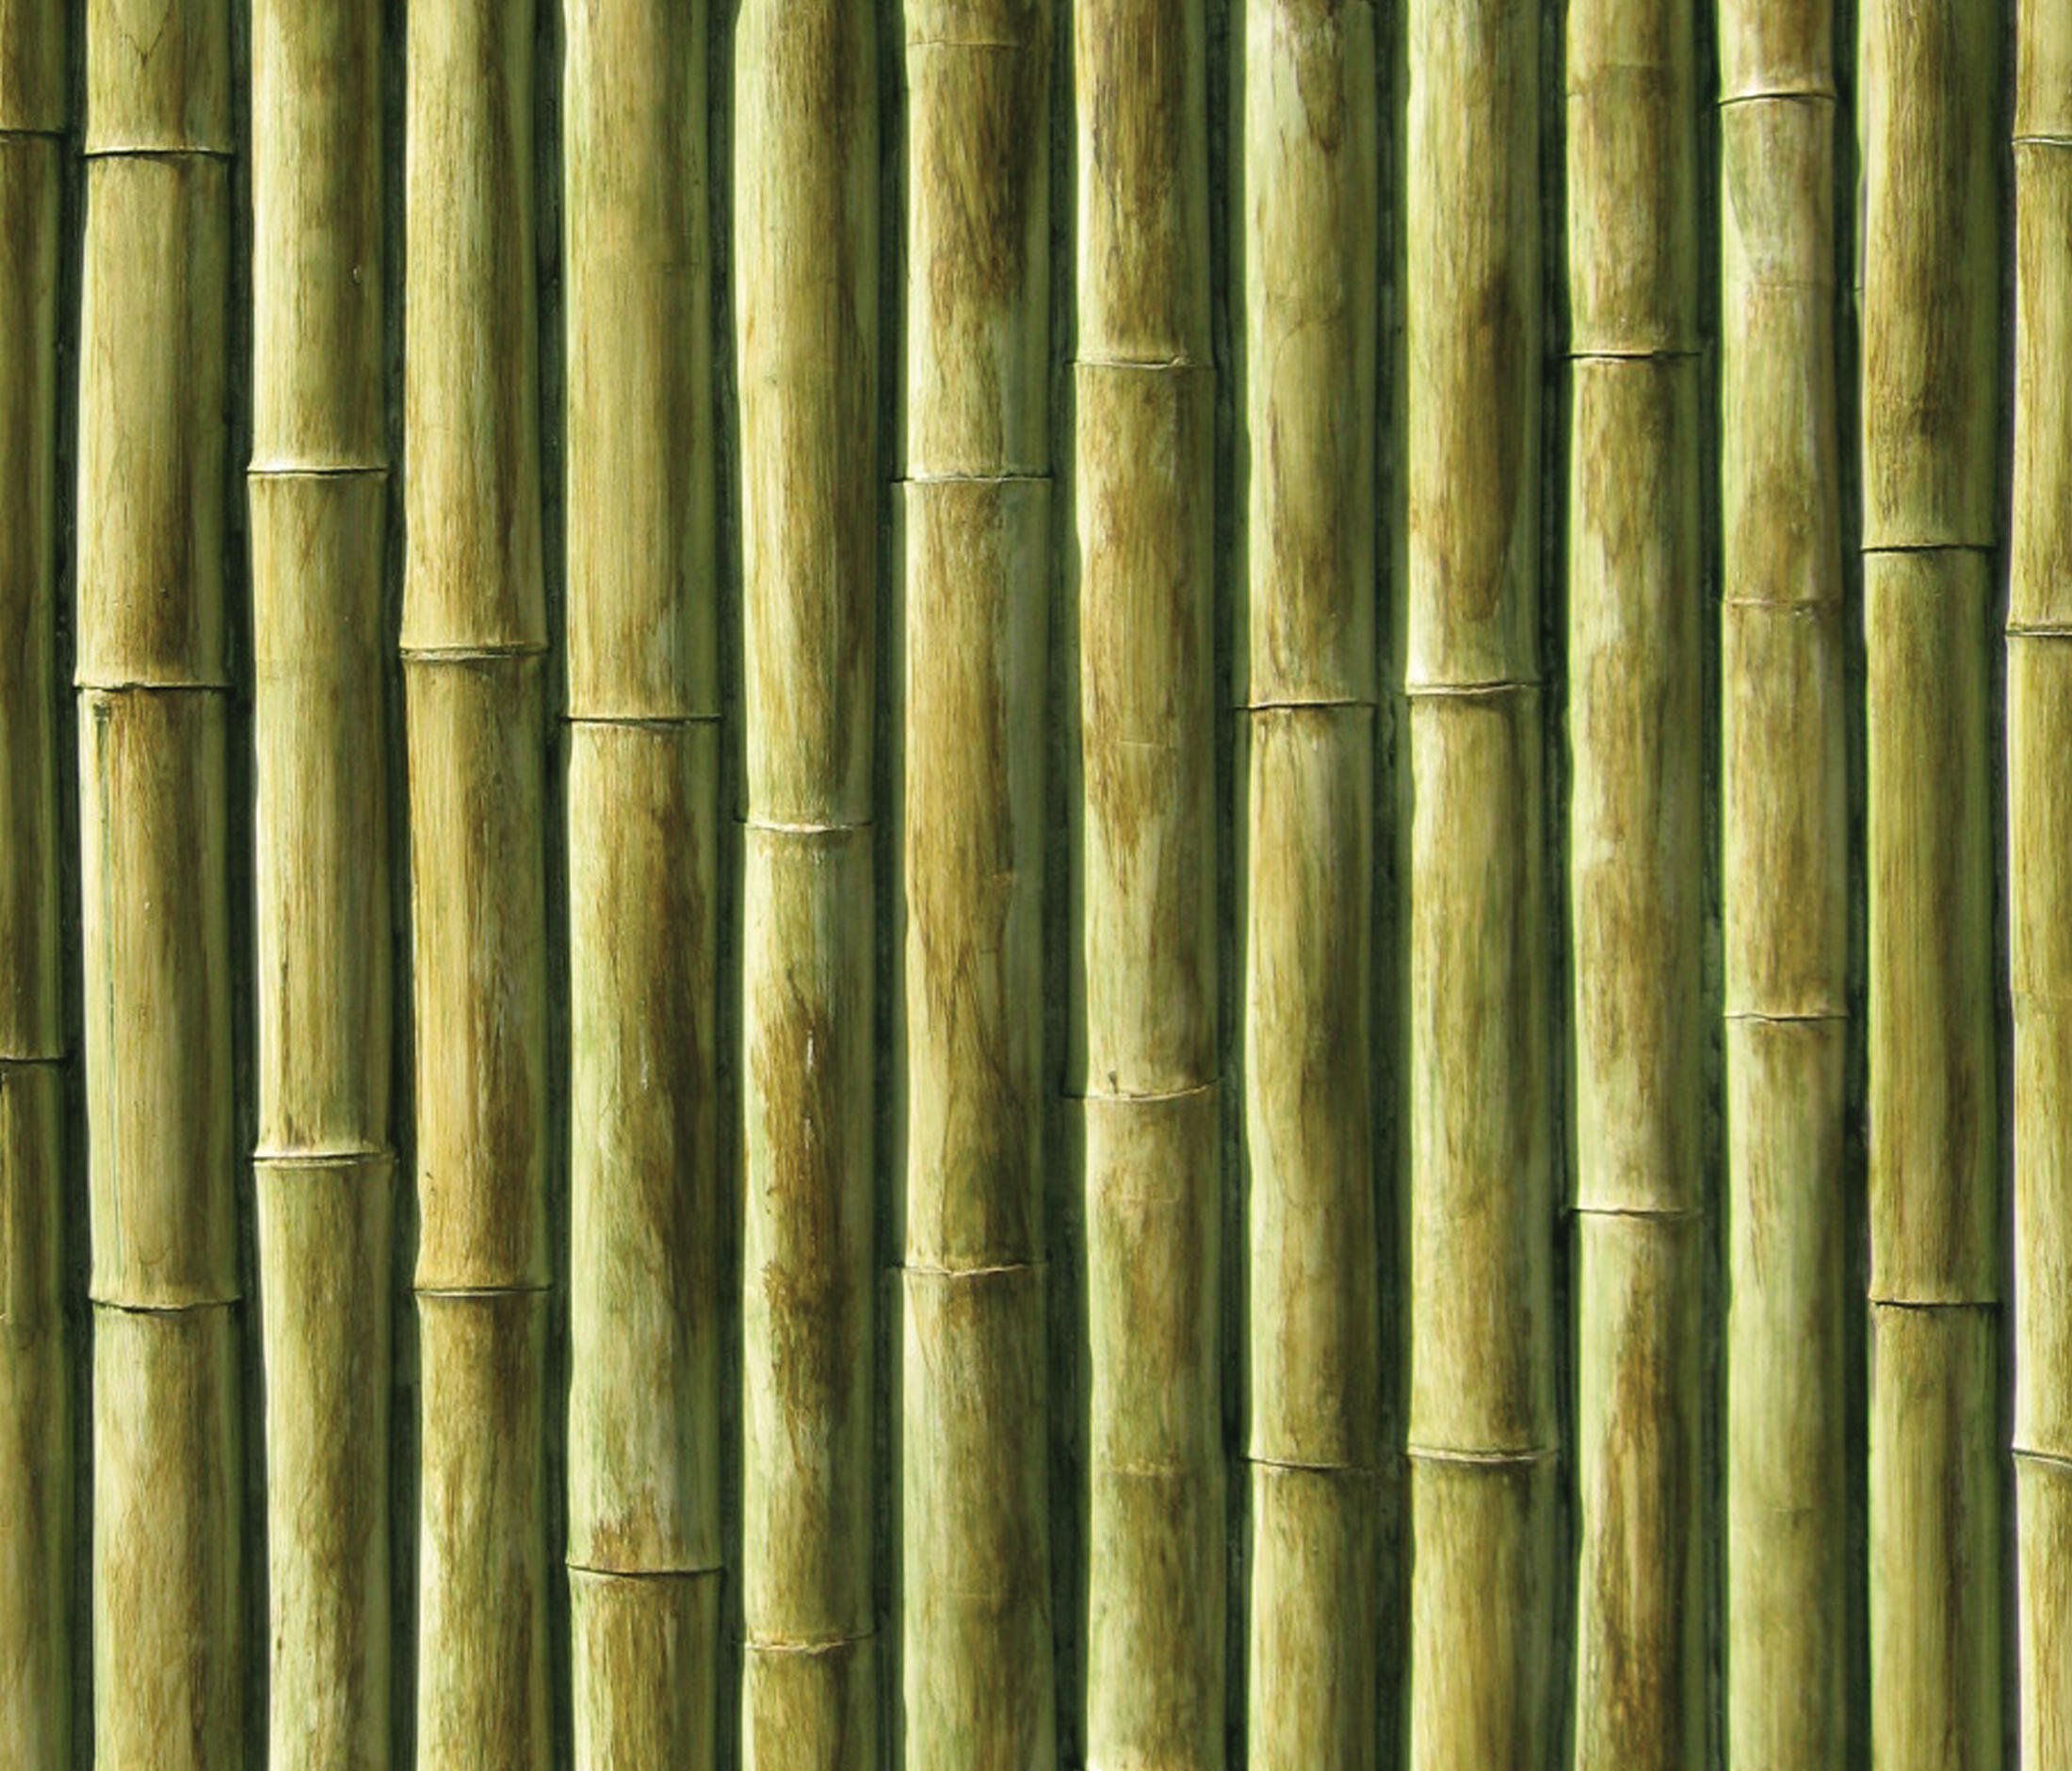 Биг бамбу big bambooo com. Бамбуковая стена. Бамбуковые панели для стен. Стеновые панели из бамбука. Бамбуковые обои.